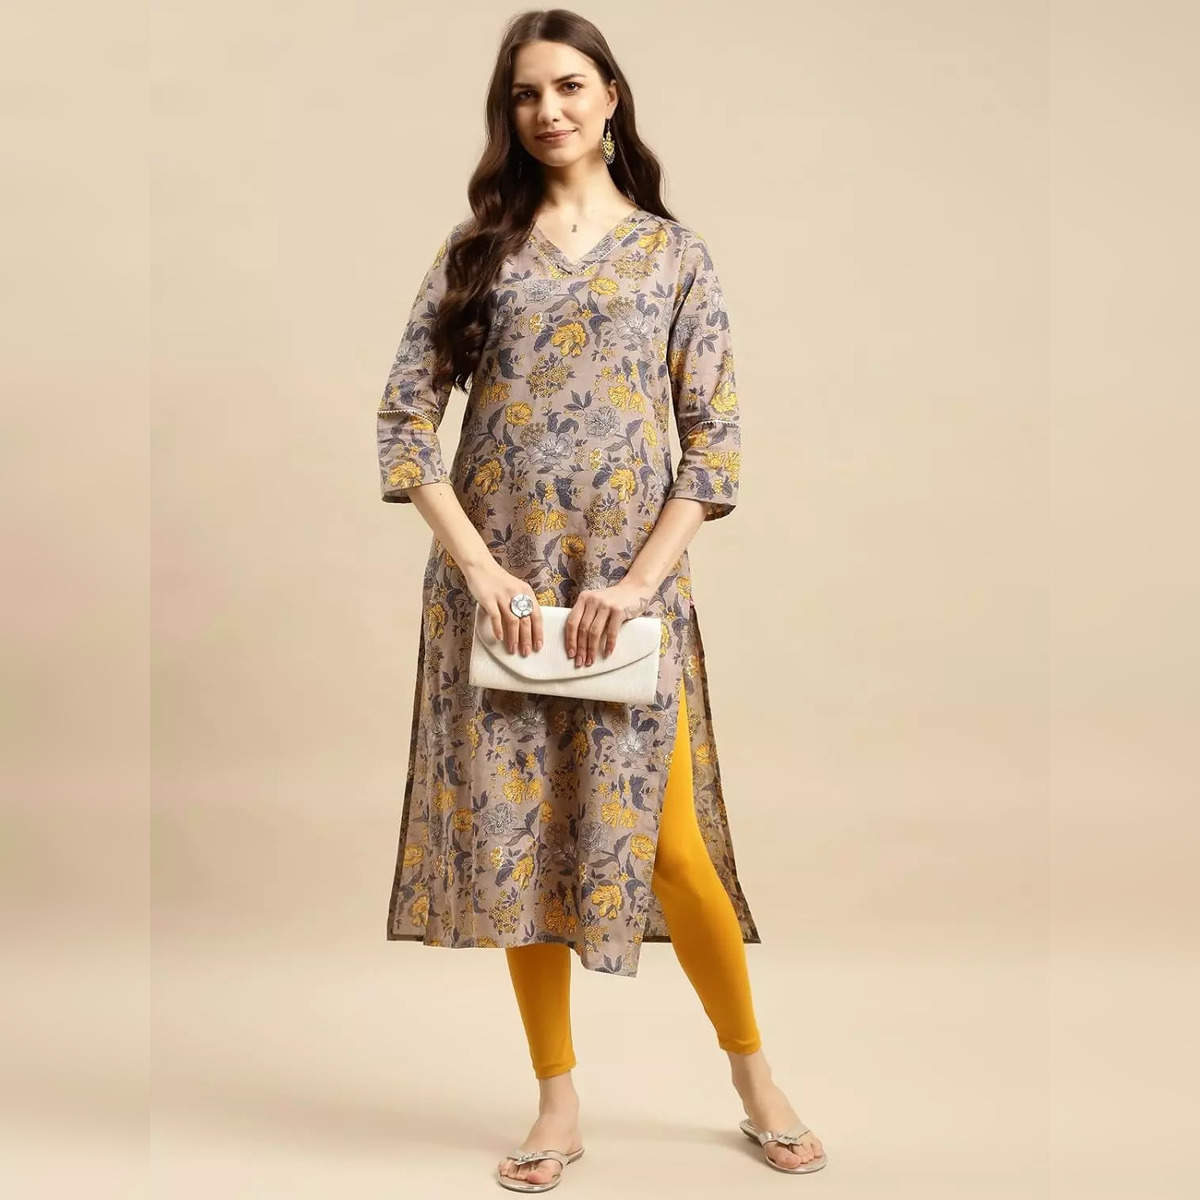 5 best cotton leggings for women in india for maximum comfort